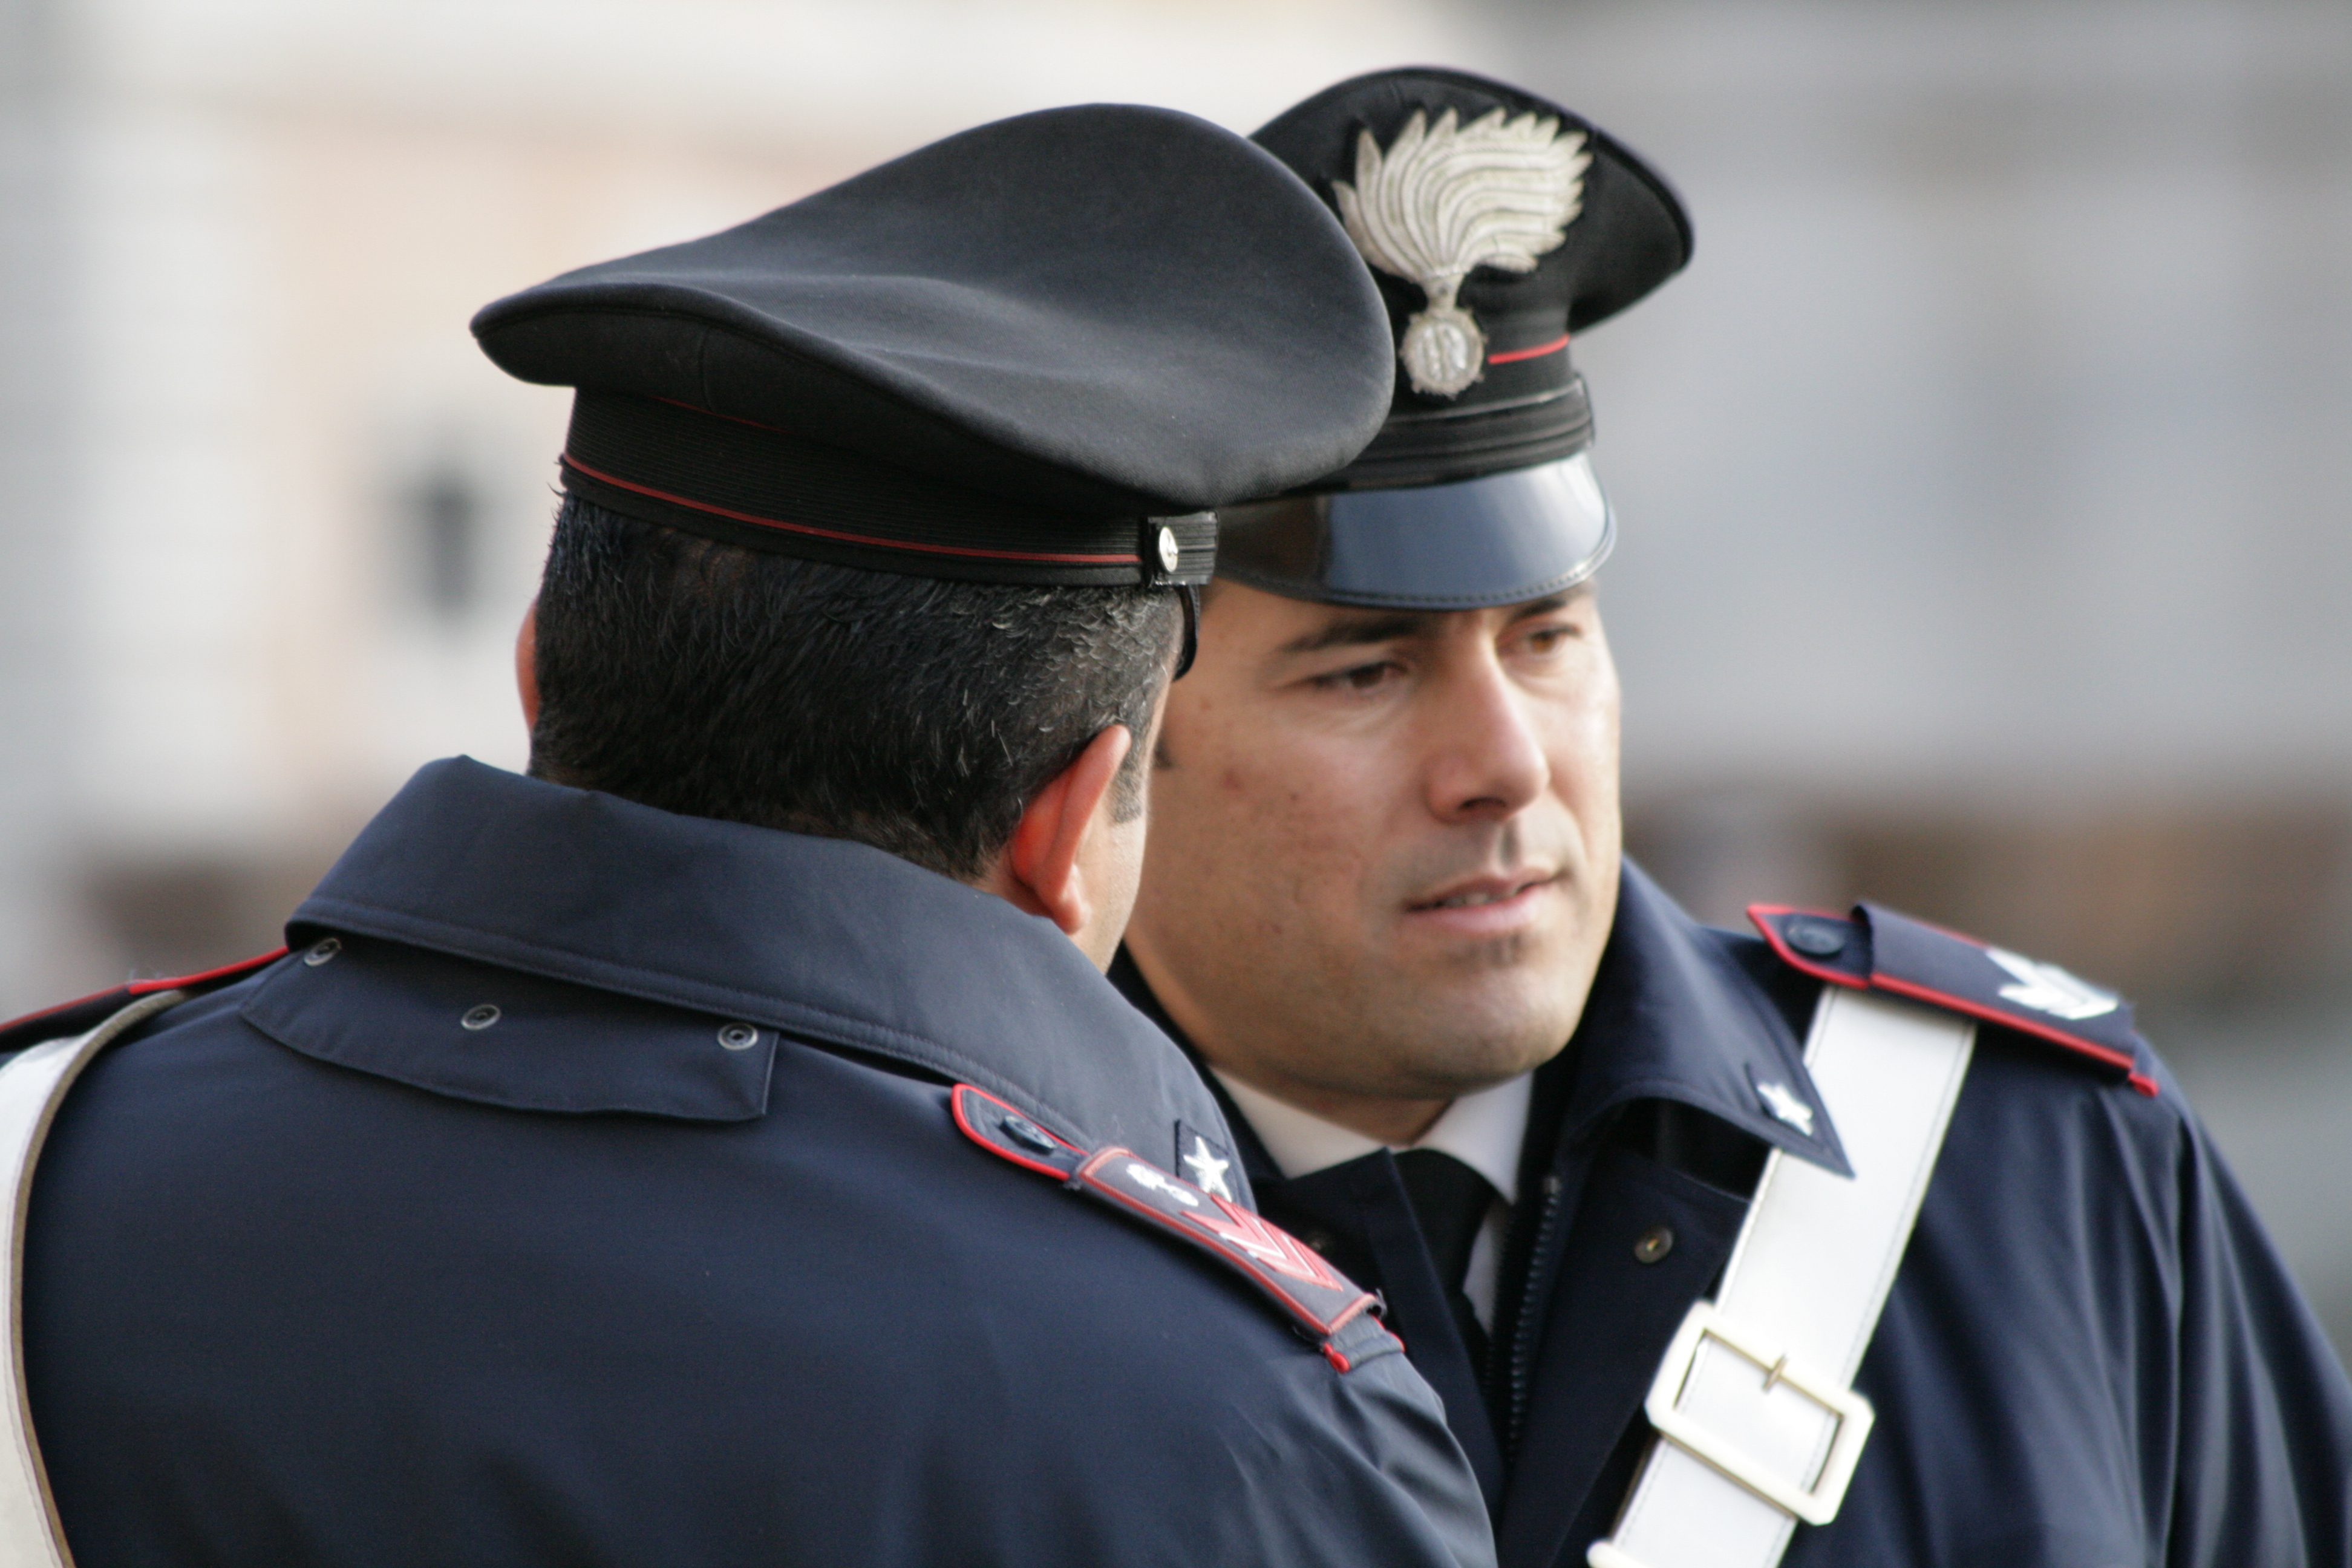 Che Differenza C E Tra I Carabinieri E La Polizia Supereva